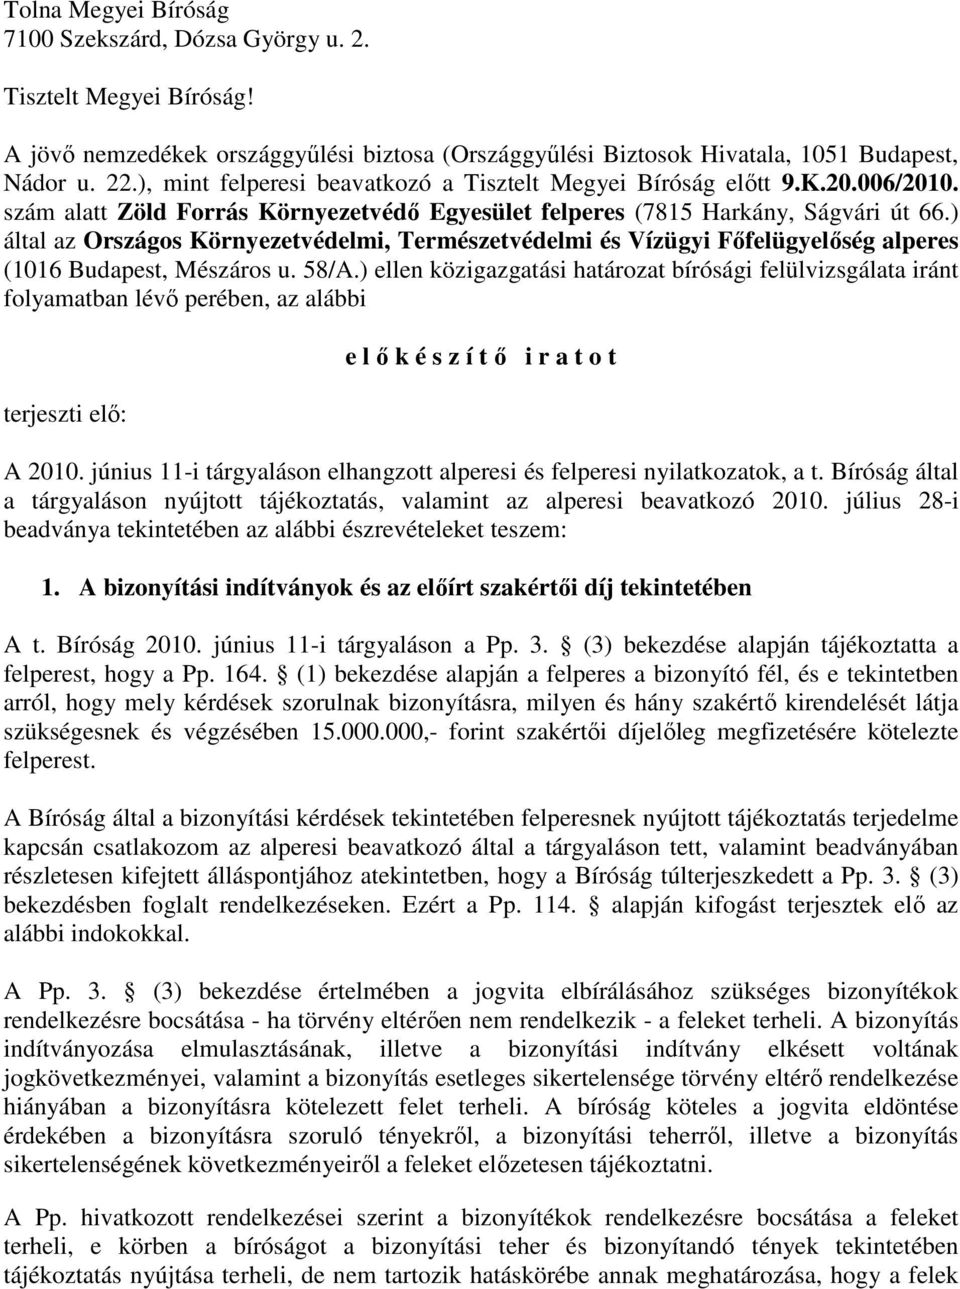 ) által az Országos Környezetvédelmi, Természetvédelmi és Vízügyi Fıfelügyelıség alperes (1016 Budapest, Mészáros u. 58/A.